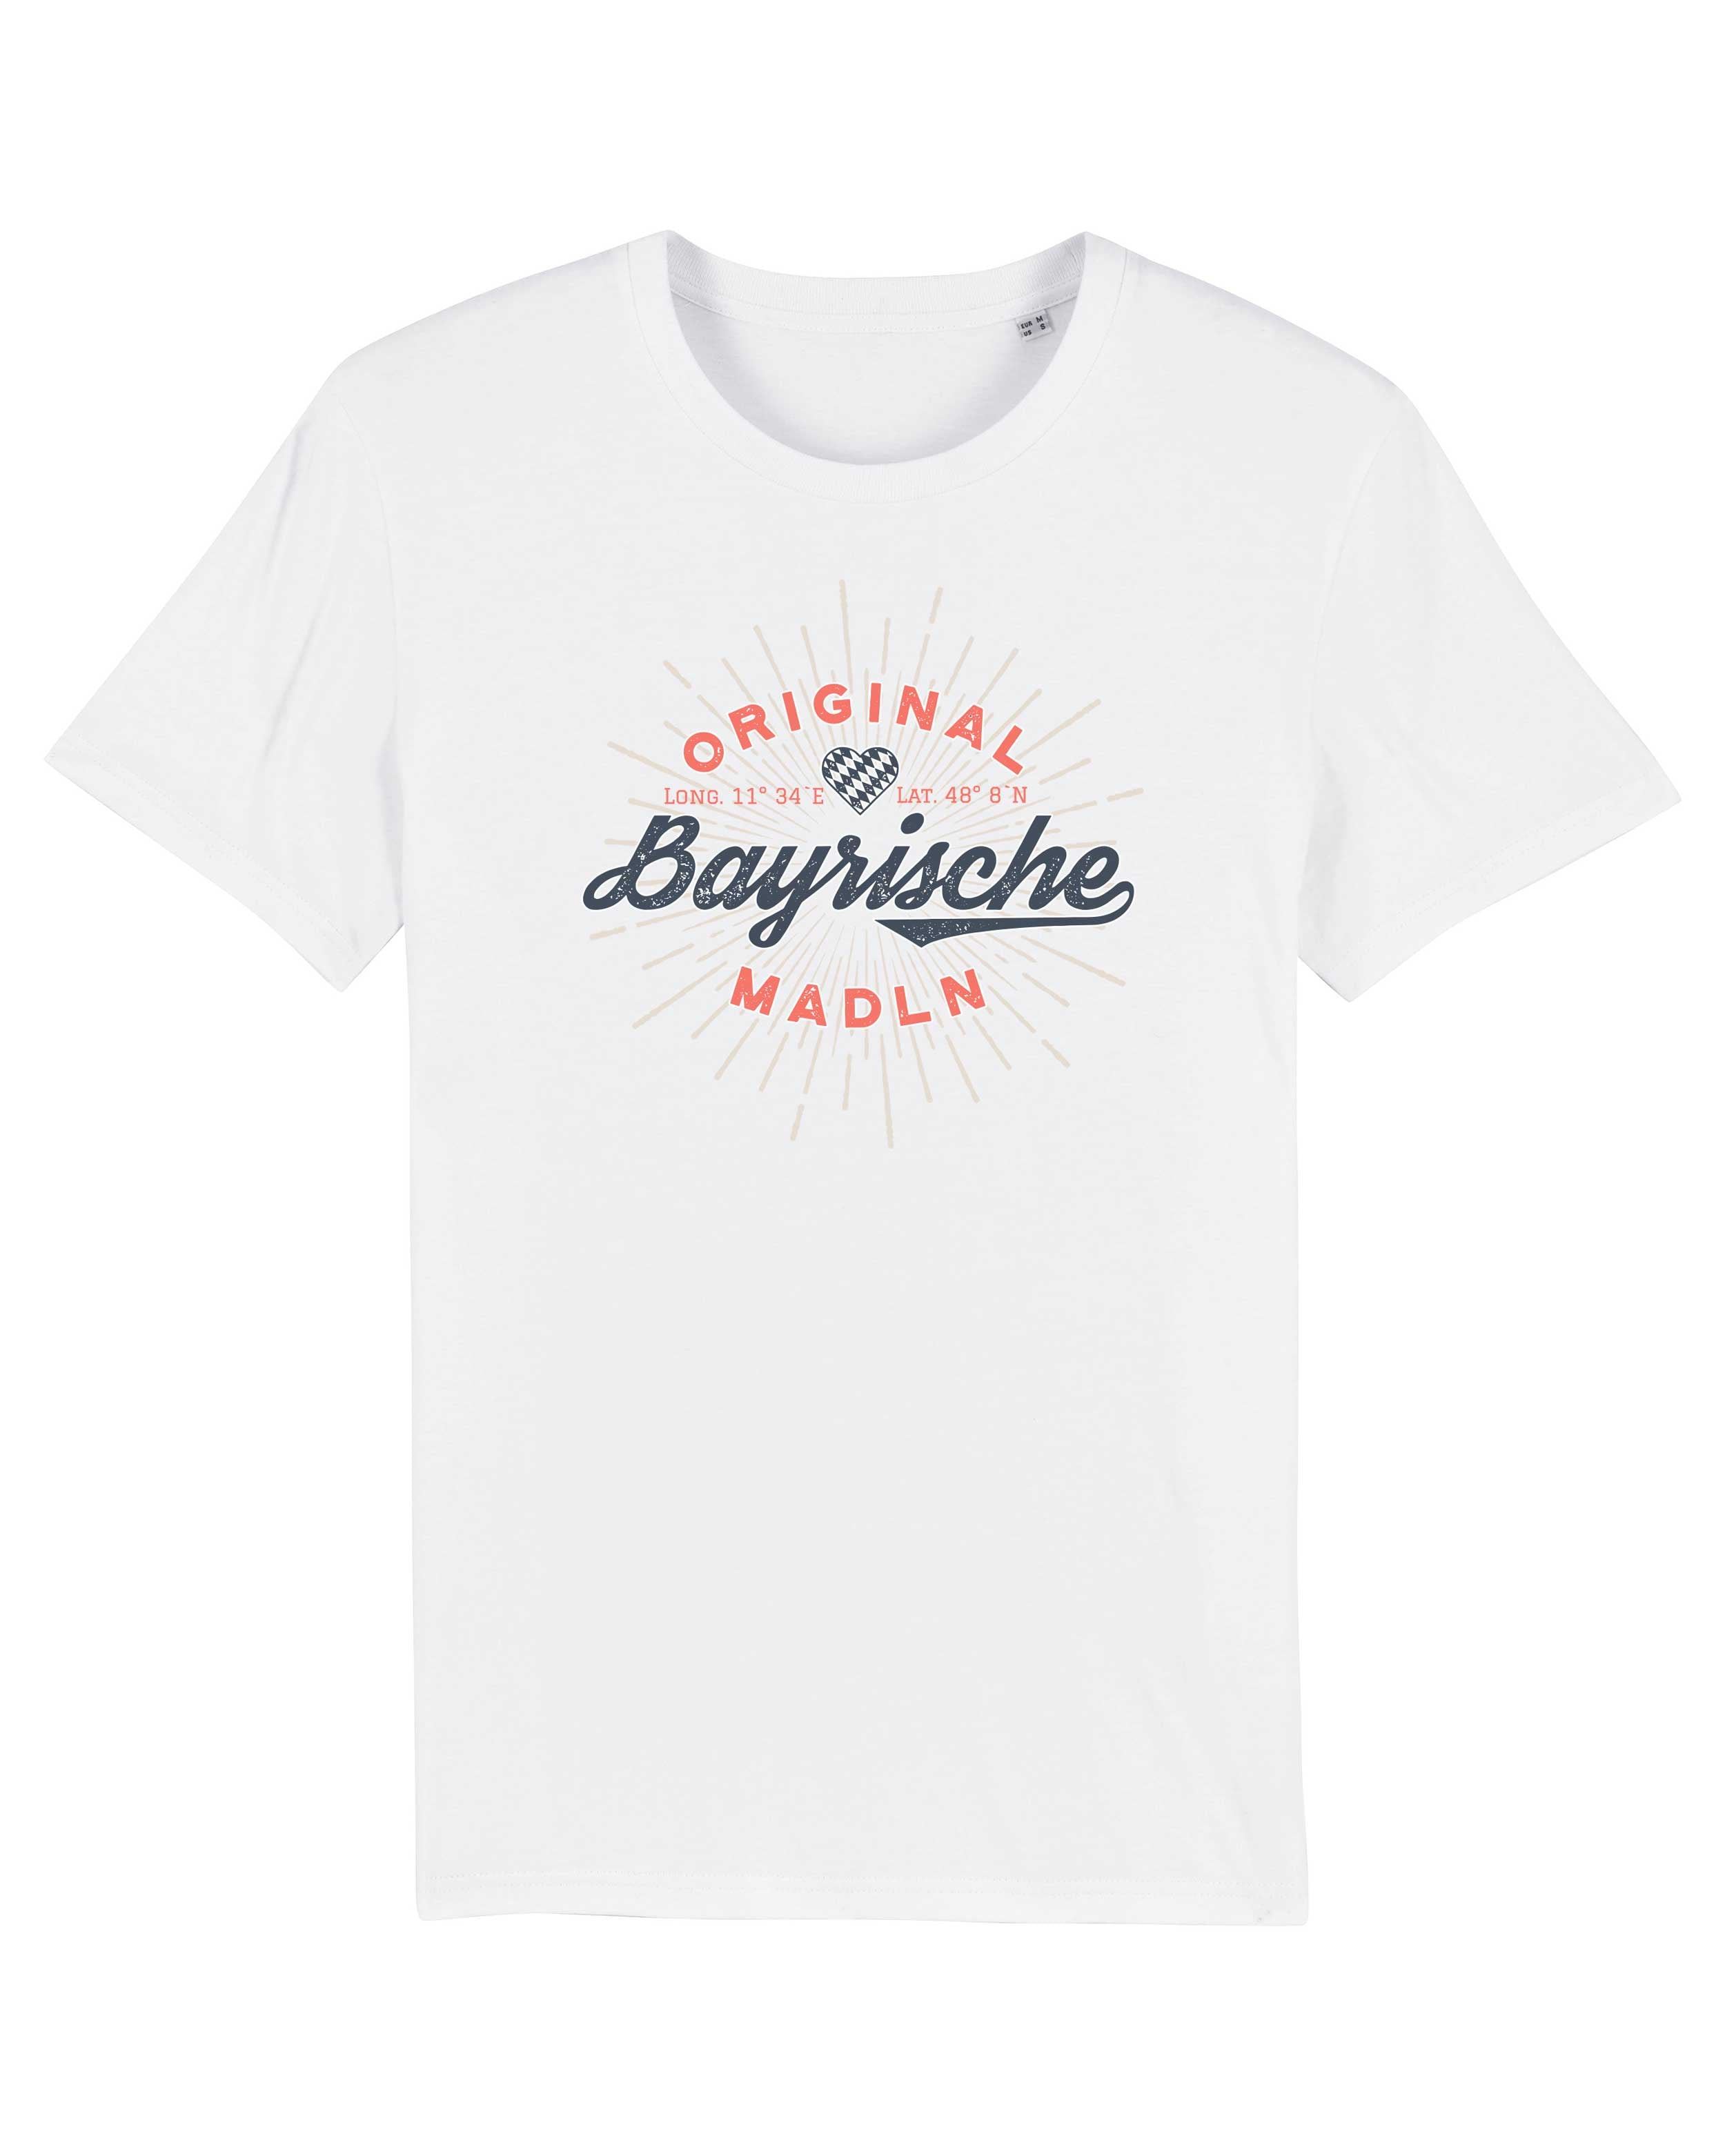 T-Shirt Bayrische Madln Sprüche, Bio-Baumwolle, Unisex, Damen, Kids